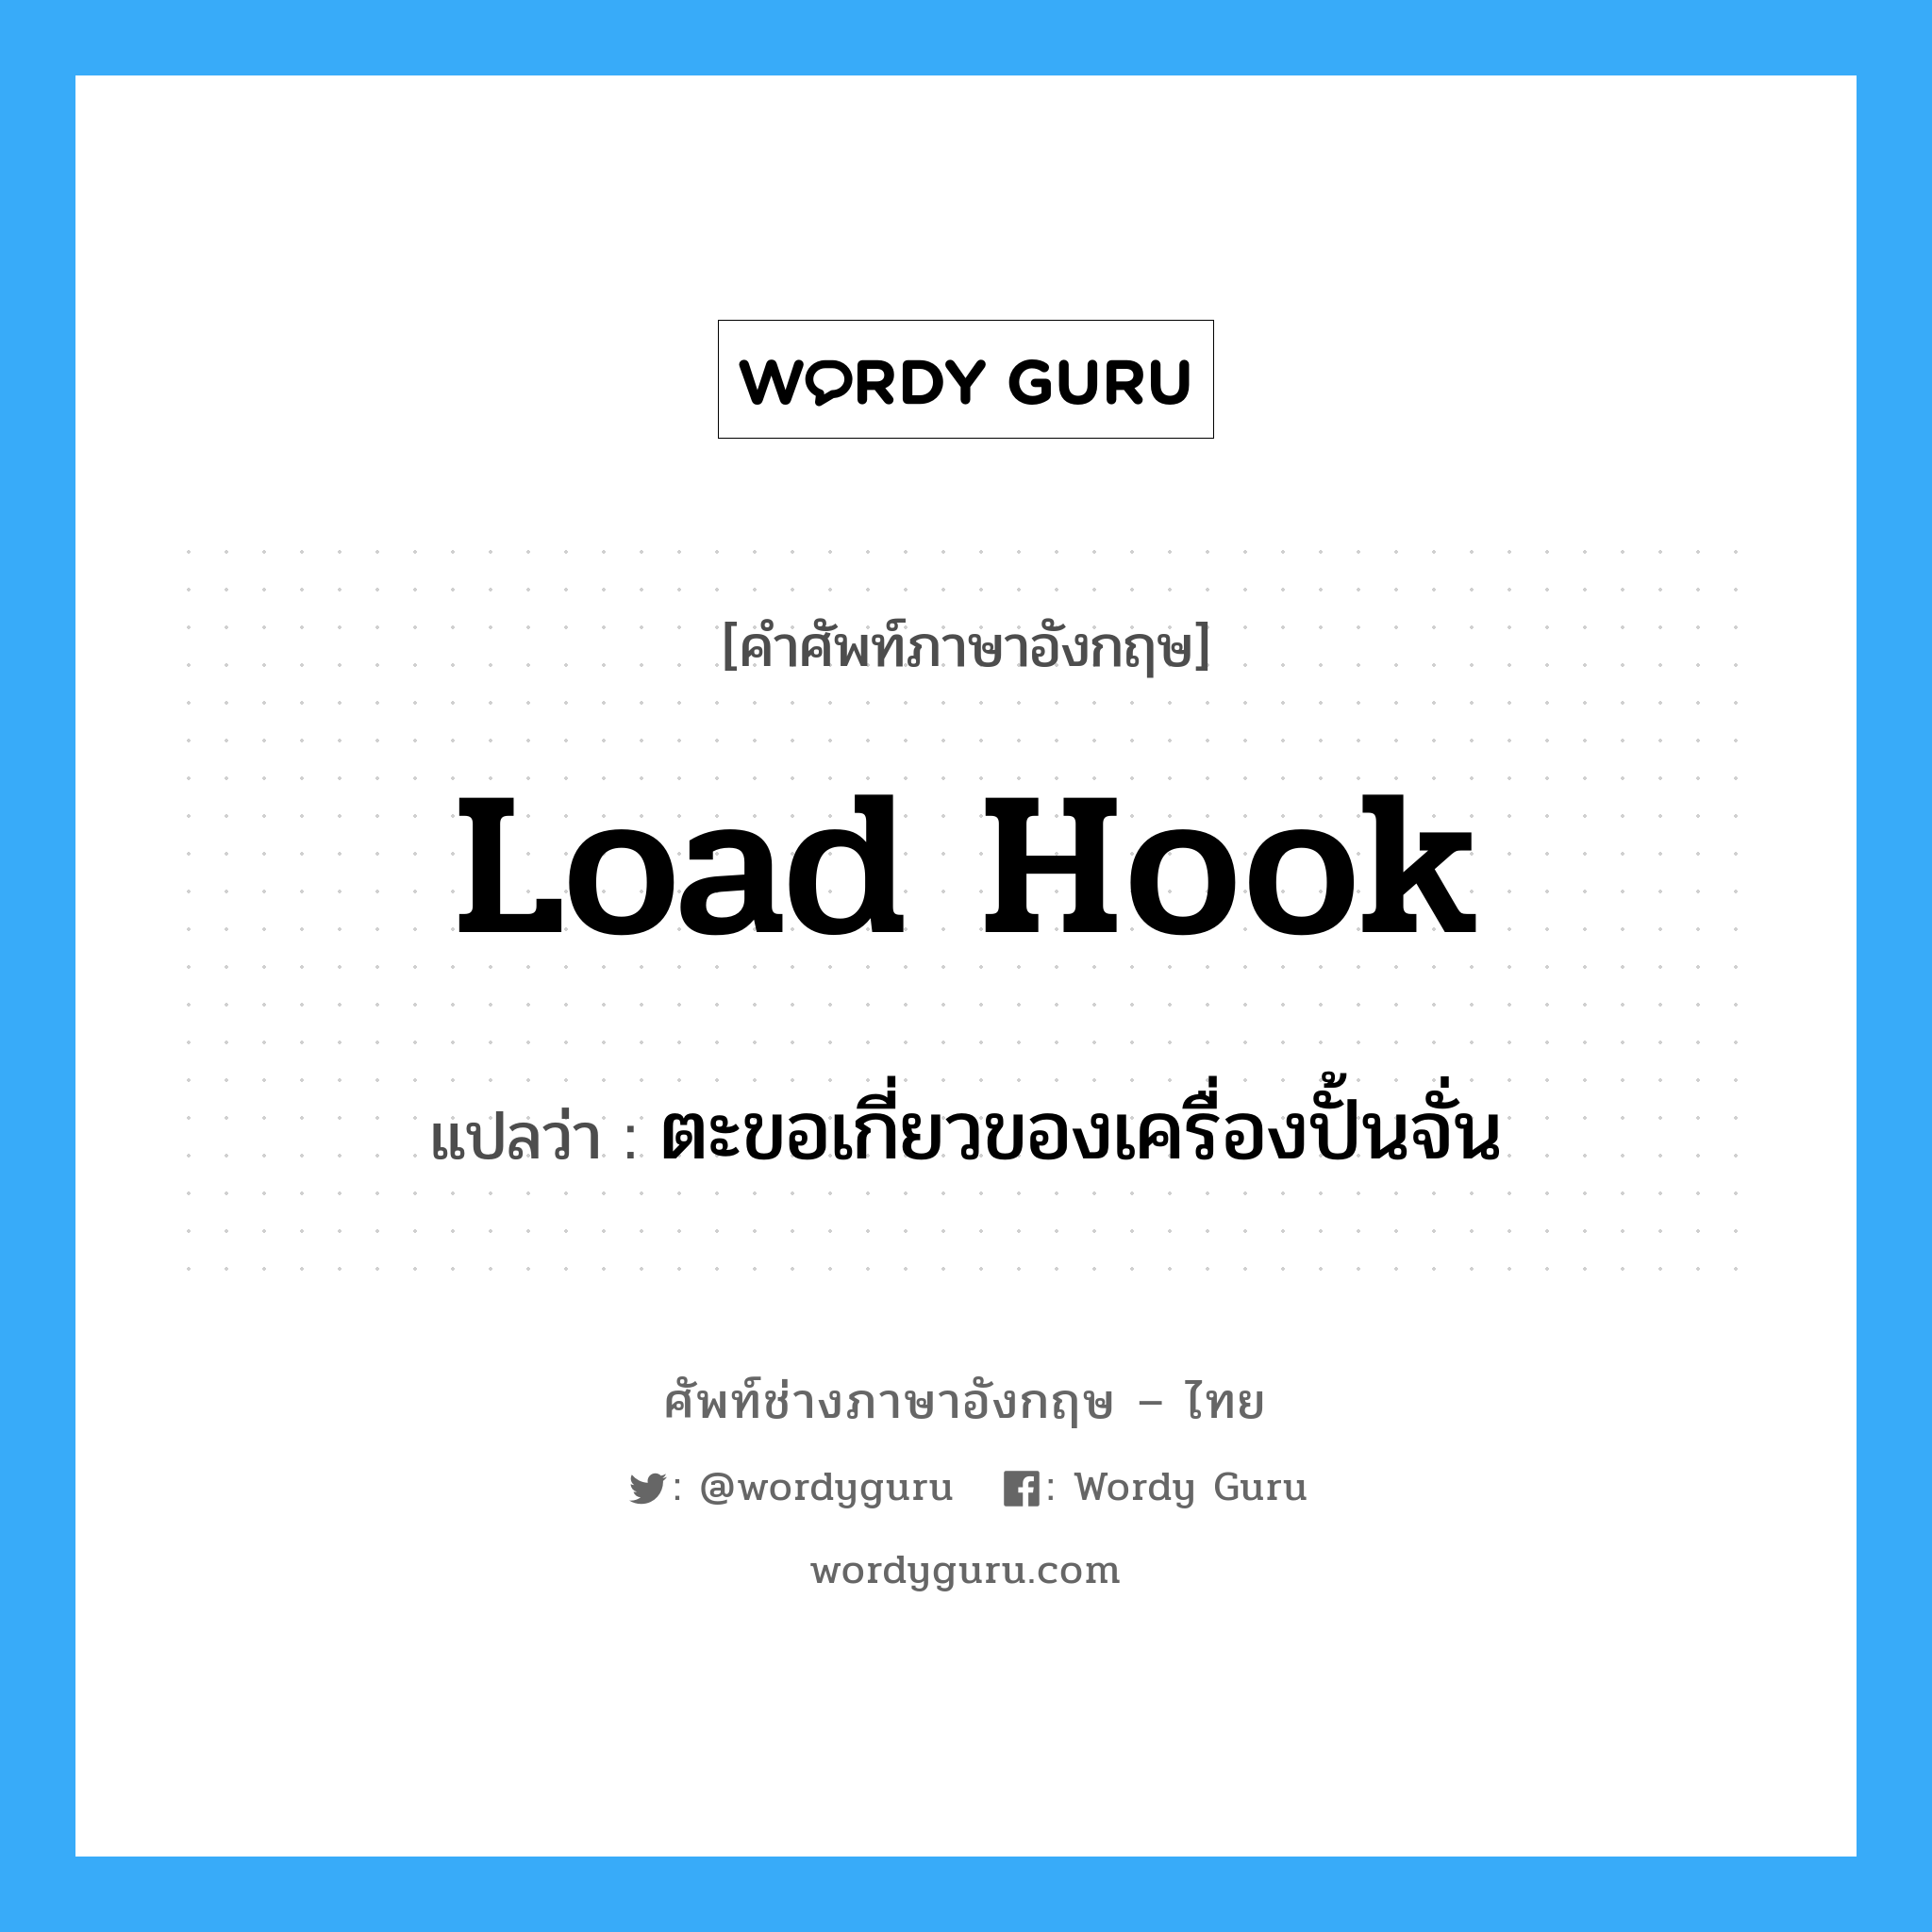 load hook แปลว่า?, คำศัพท์ช่างภาษาอังกฤษ - ไทย load hook คำศัพท์ภาษาอังกฤษ load hook แปลว่า ตะขอเกี่ยวของเครื่องปั้นจั่น